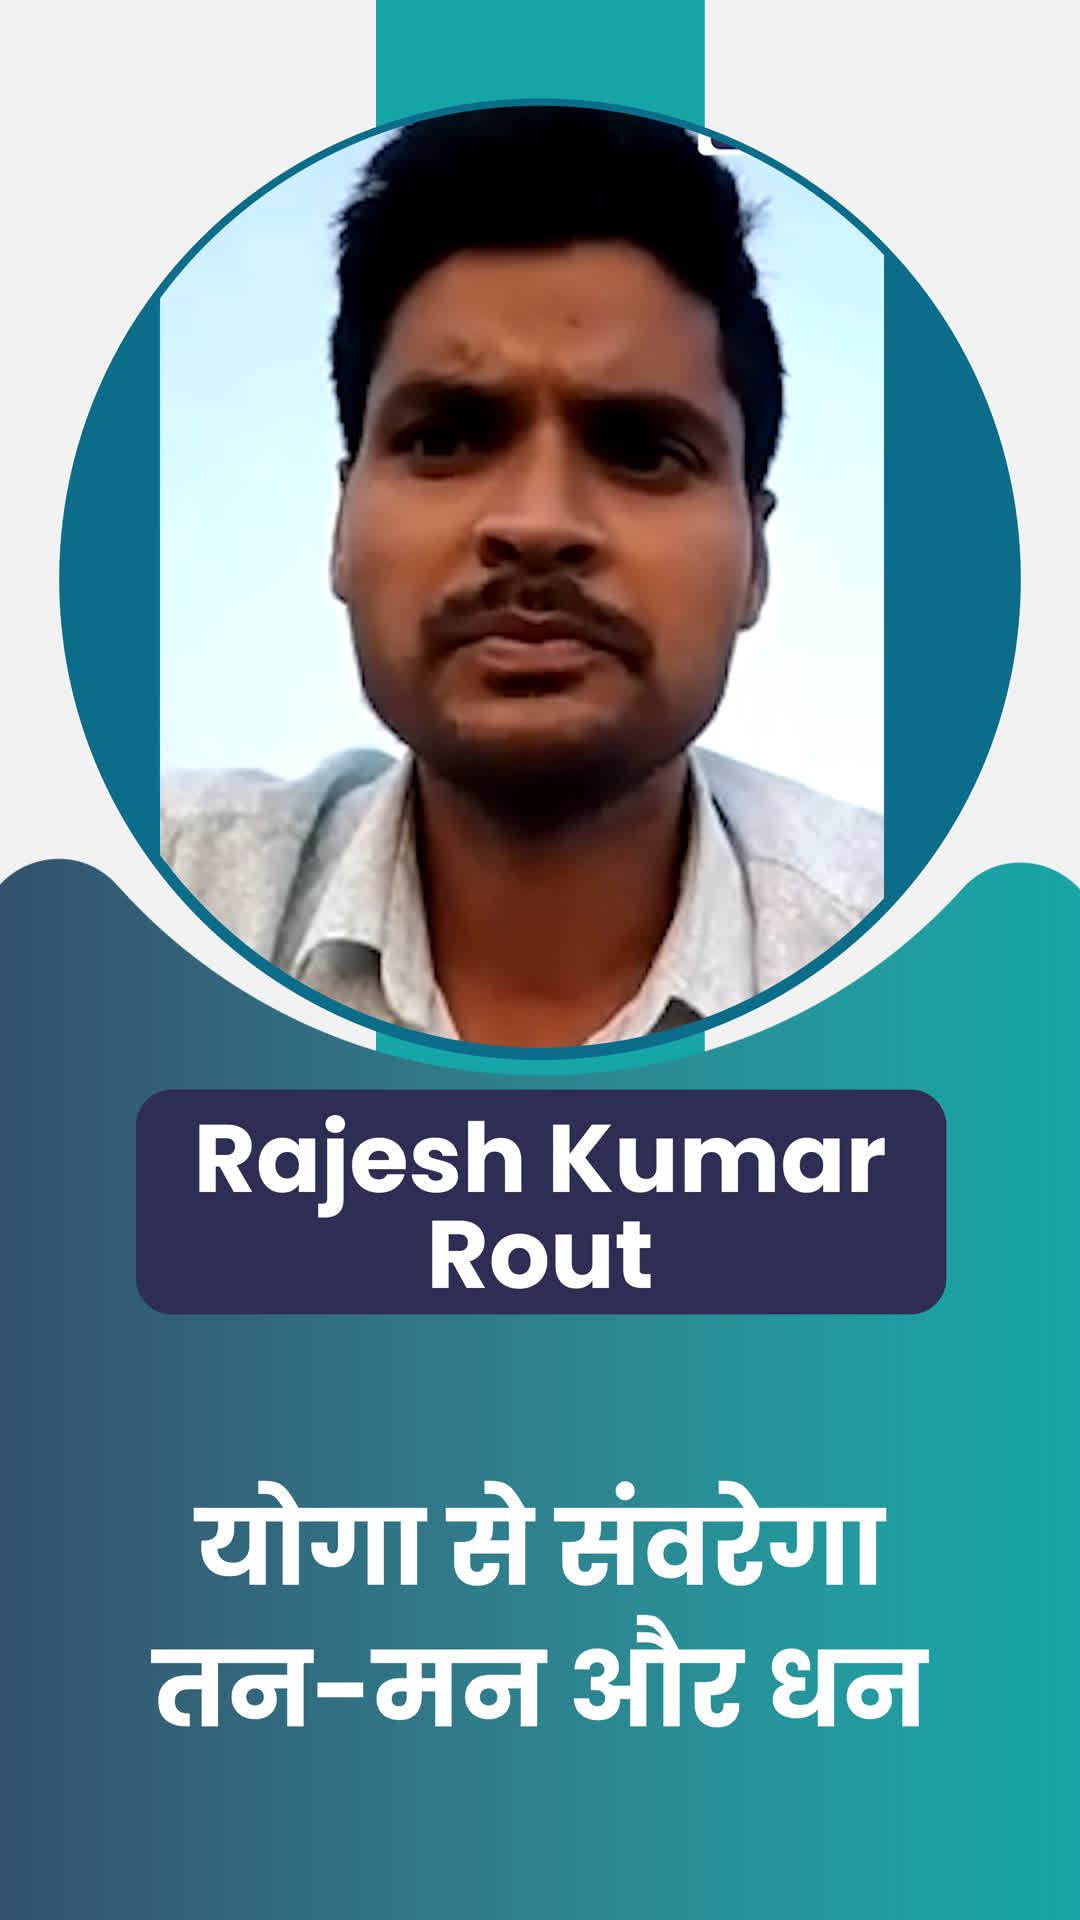 Rajesh Kumar Rout's Honest Review of ffreedom app - Balangir ,Orissa